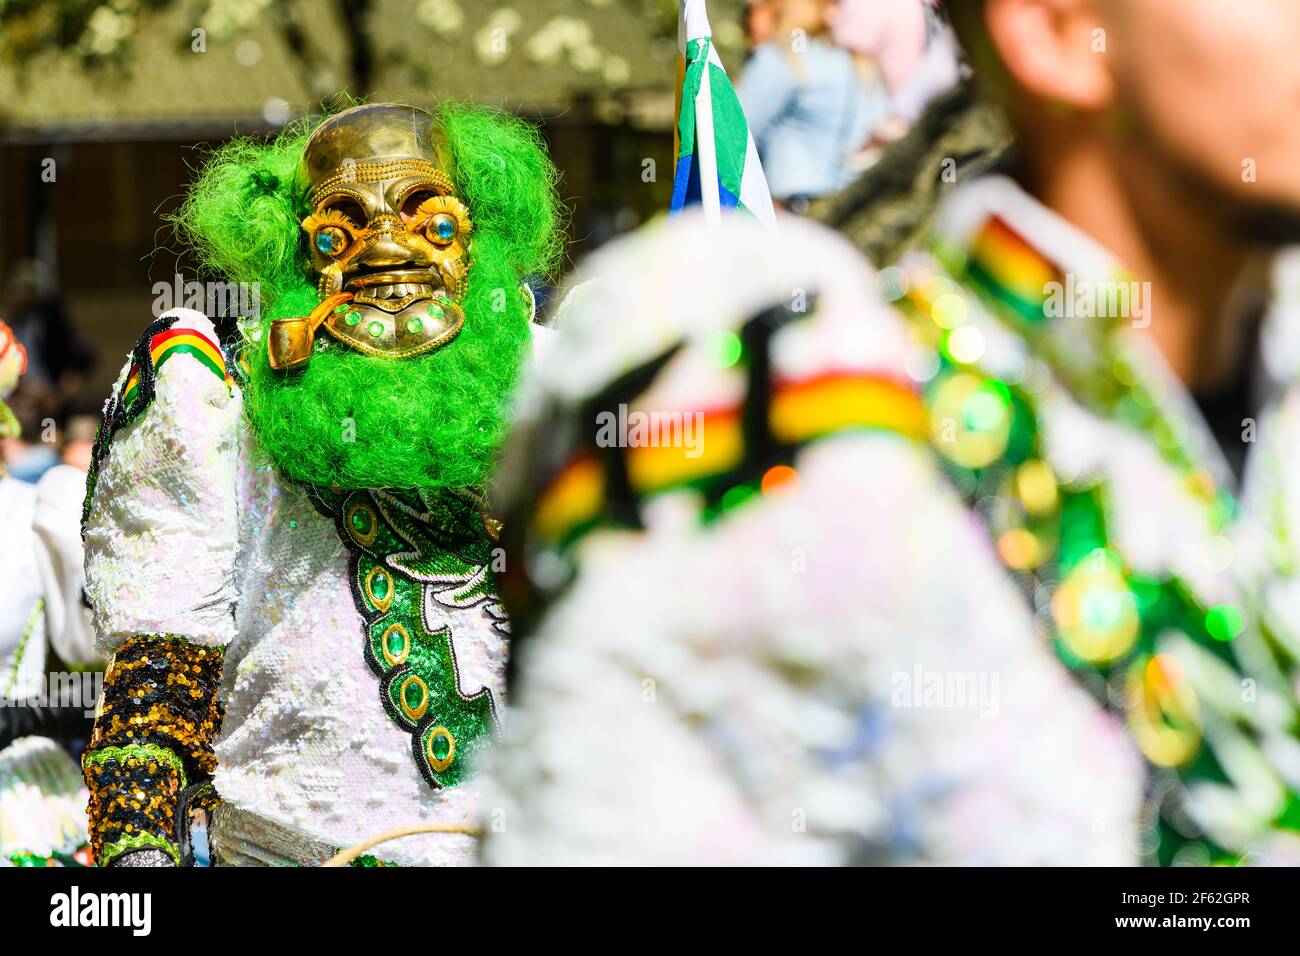 HAMMARKULLEN, SCHWEDEN - 25. MAI 2019: Bunt gekleideter Maskenmann beim jährlichen Karneval in Hammarkullen, Schweden Stockfoto